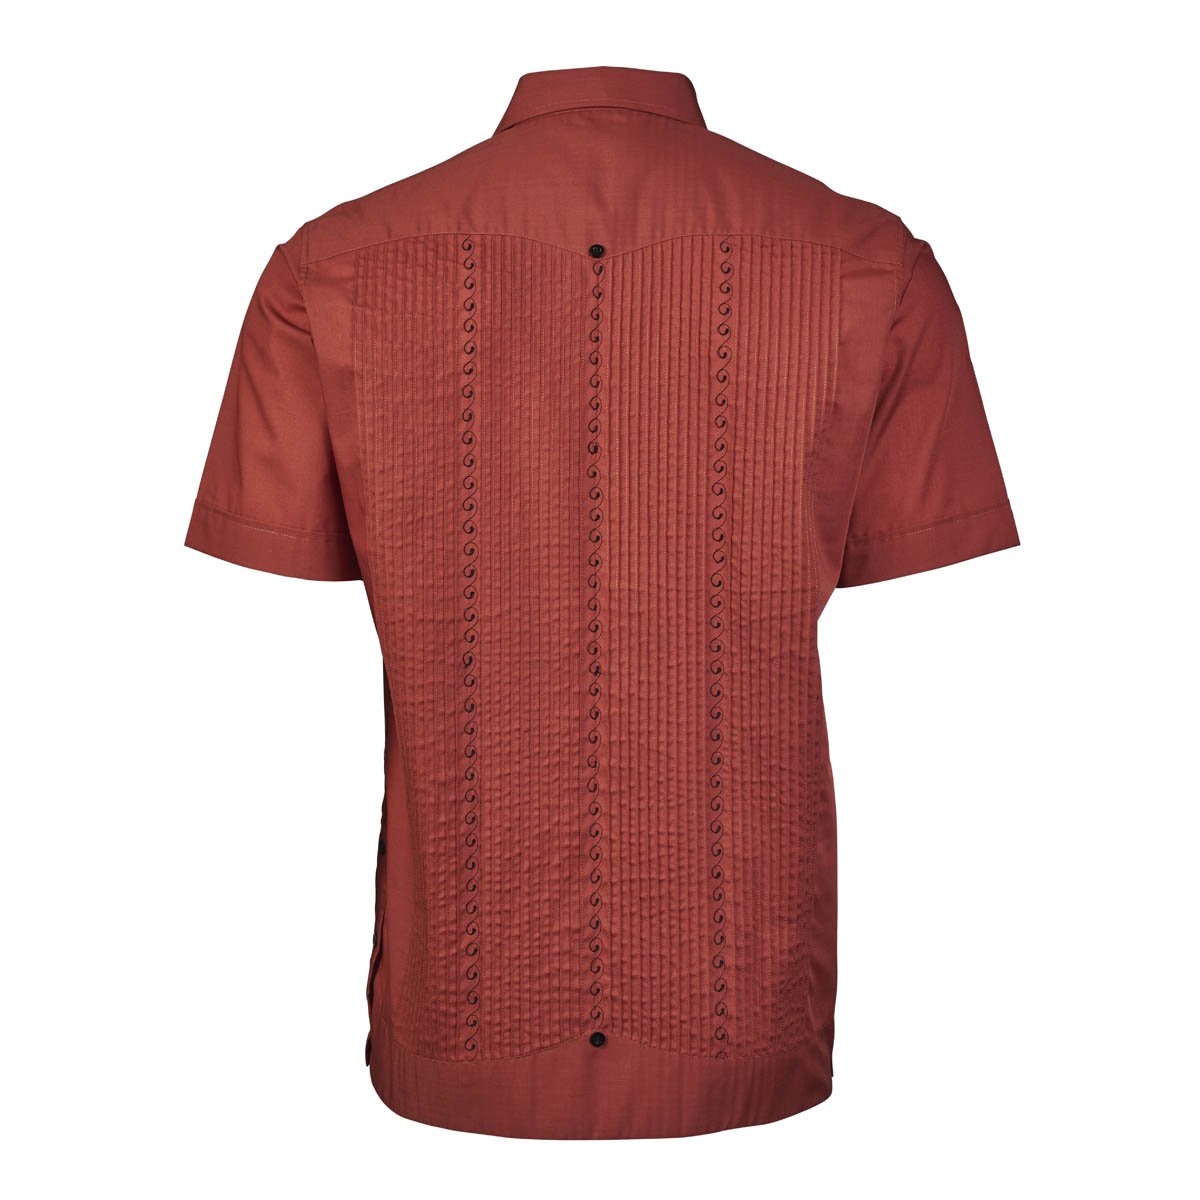 Men's-Guayabera-Linen-4-Pocket-Short-Sleeve-Shirt-Button-Down